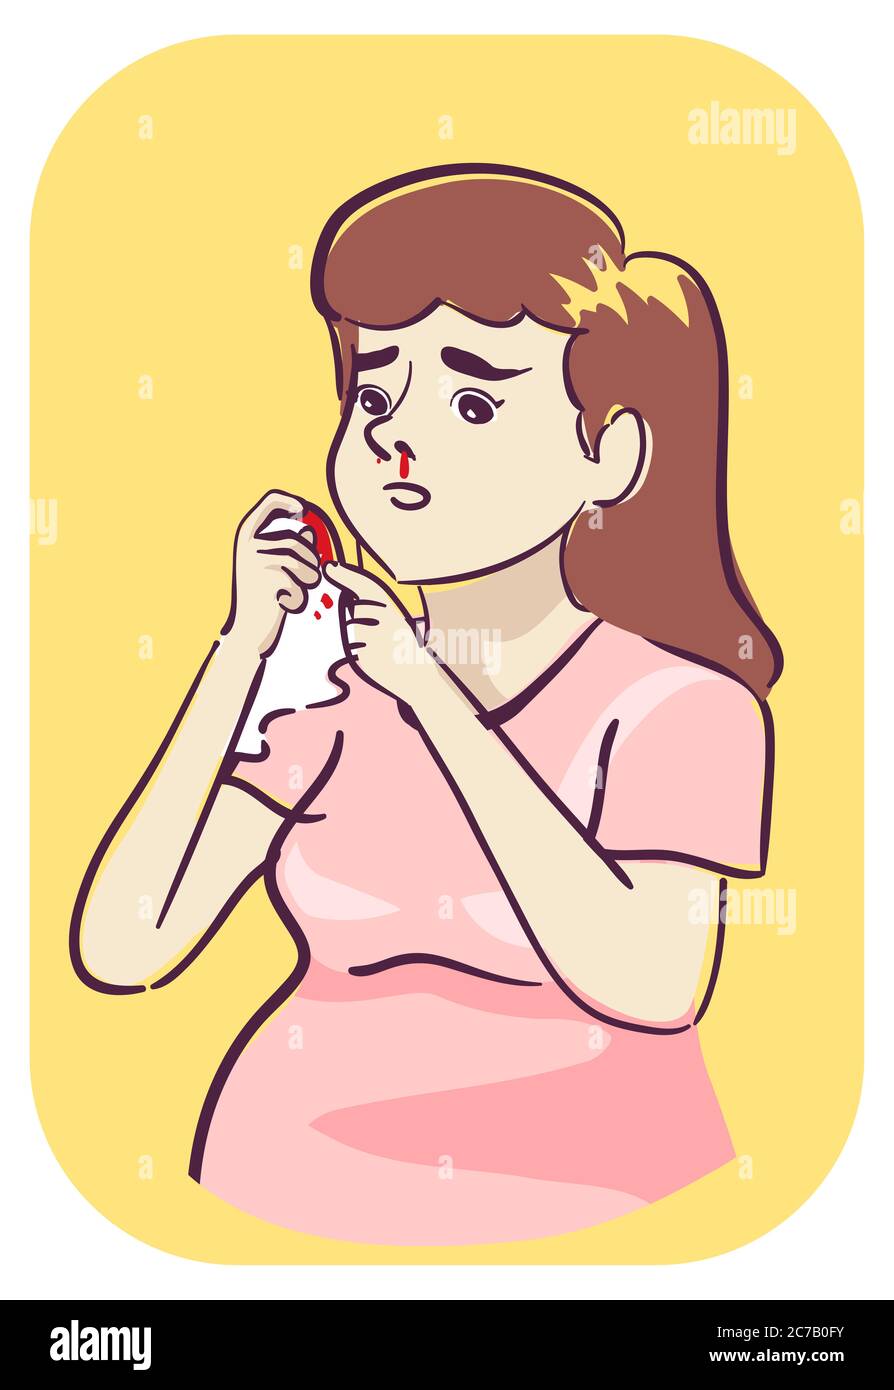 Illustration d'une femme enceinte tenant du tissu ou un mouchoir à l'aide d'un sang de son nez, symptôme de saignement du nez Banque D'Images